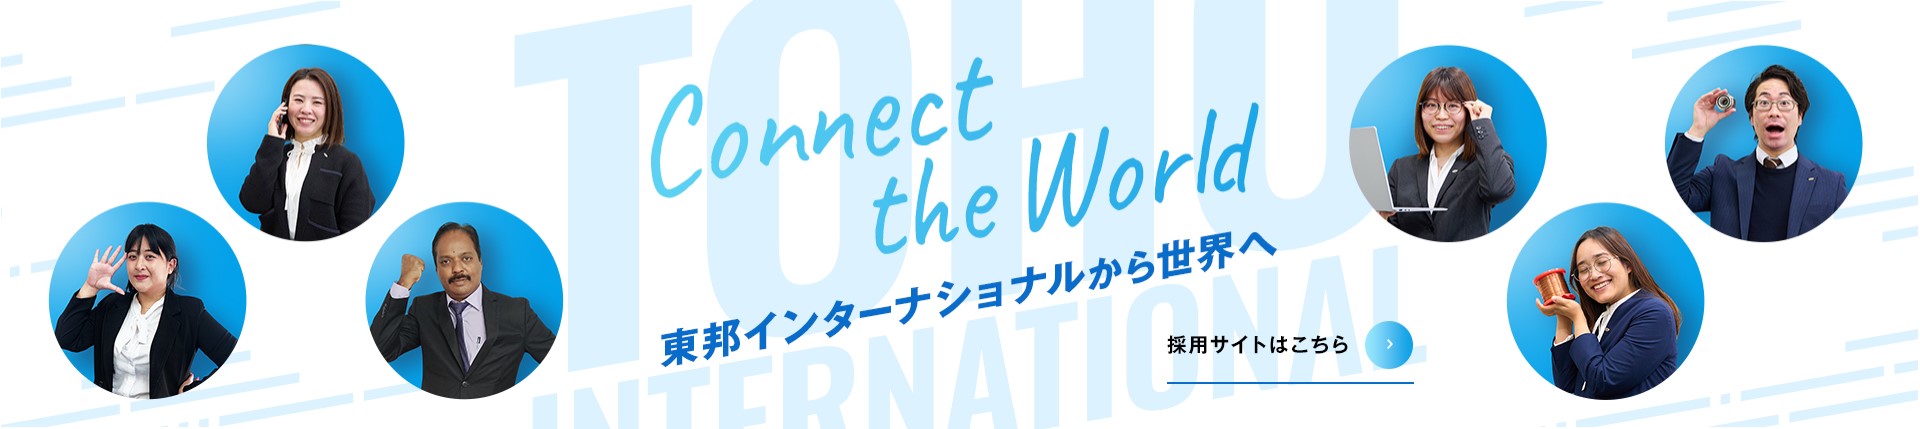 Connect the World 東邦インターナショナルから世界へ - 採用サイトはこちら